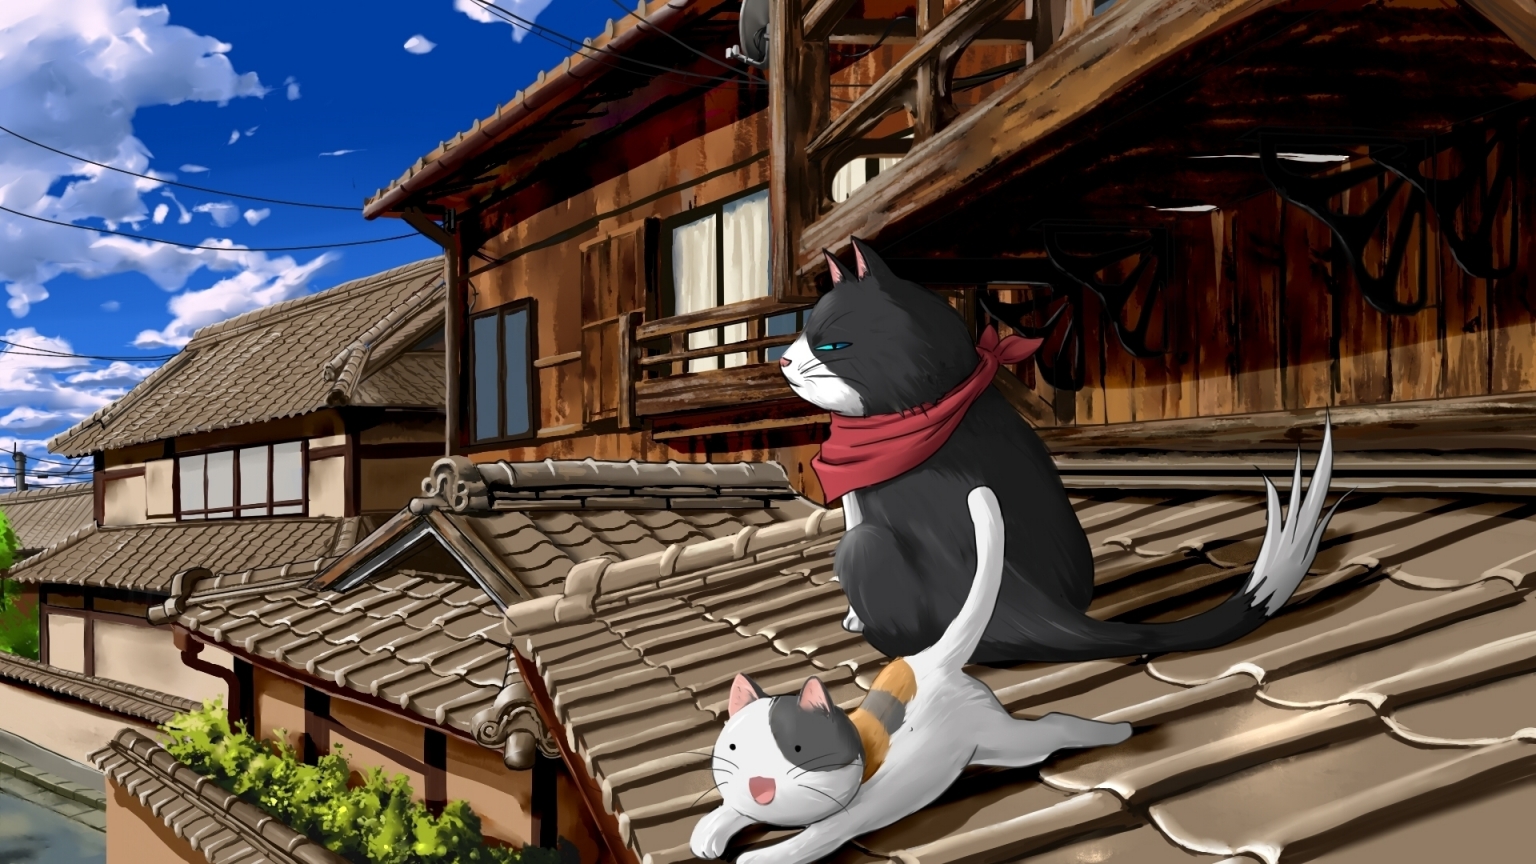 Nyan Koi Anime Series for 1536 x 864 HDTV resolution